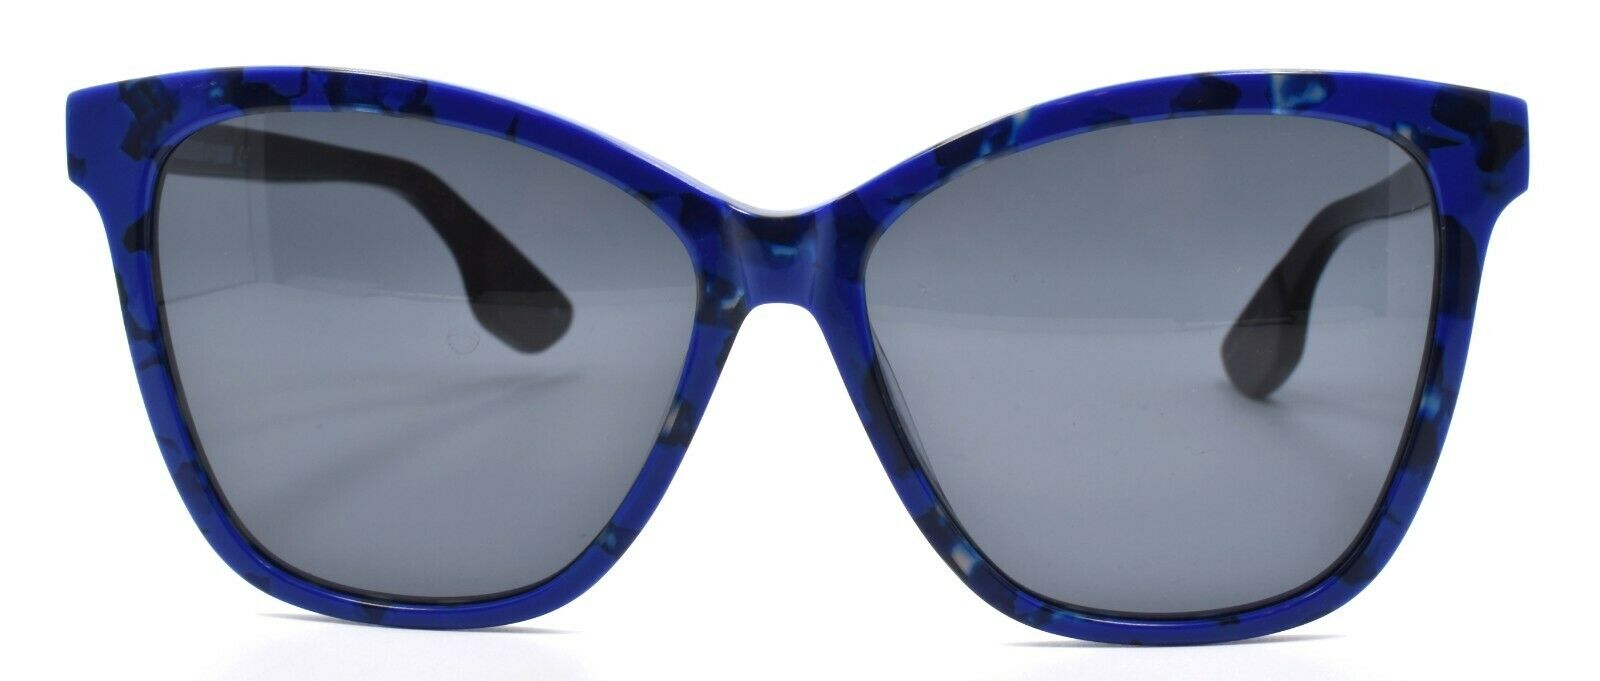 2-McQ Alexander McQueen MQ0061S 004 Women's Sunglasses Blue & Black / Blue Lens-889652064178-IKSpecs